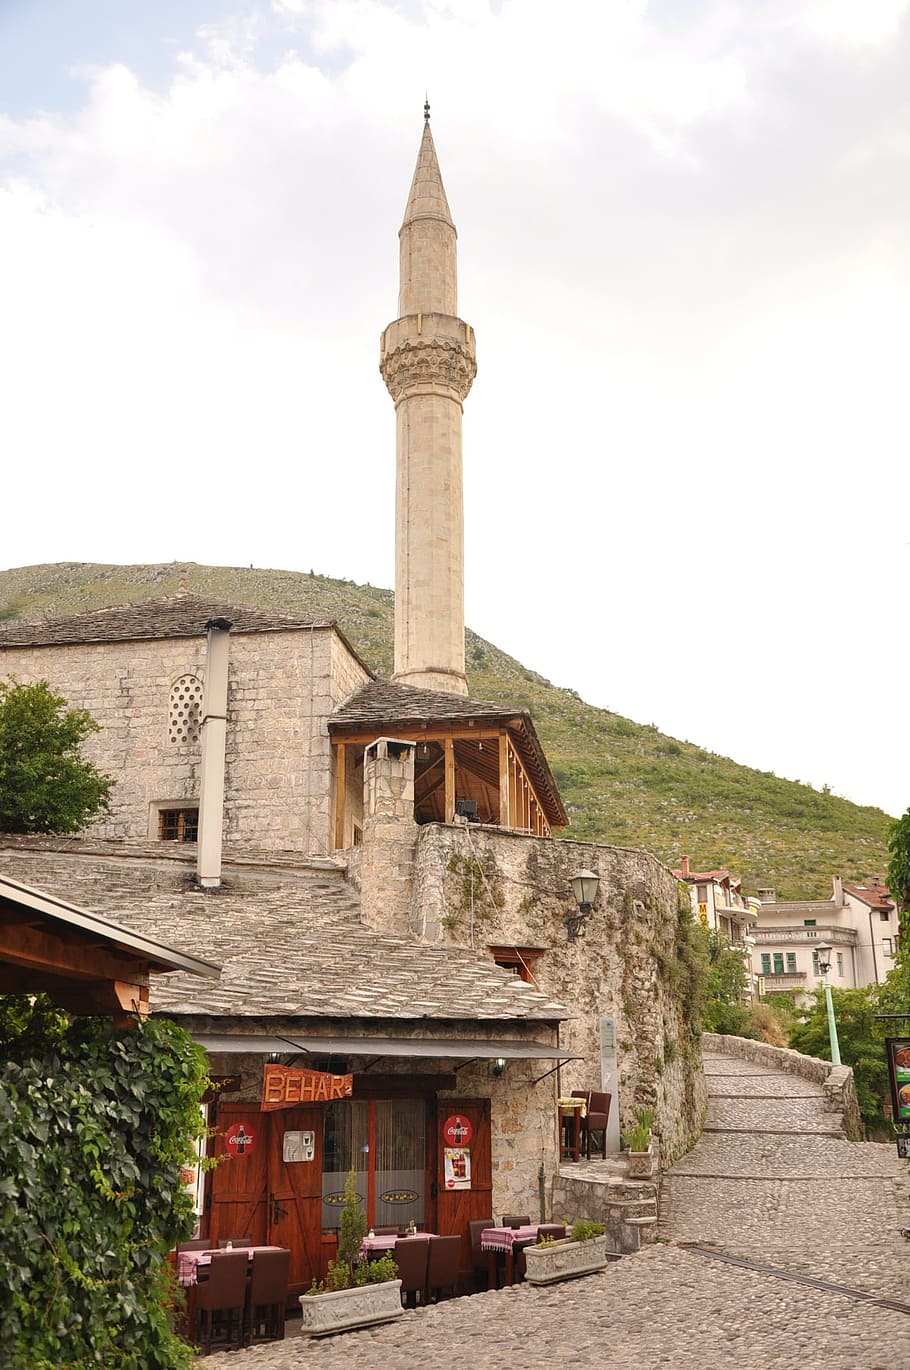 ボスニア, モスタル, 記念碑, 山, 旅行, 欠員, 建築, 歴史, 石, 宗教的記念碑